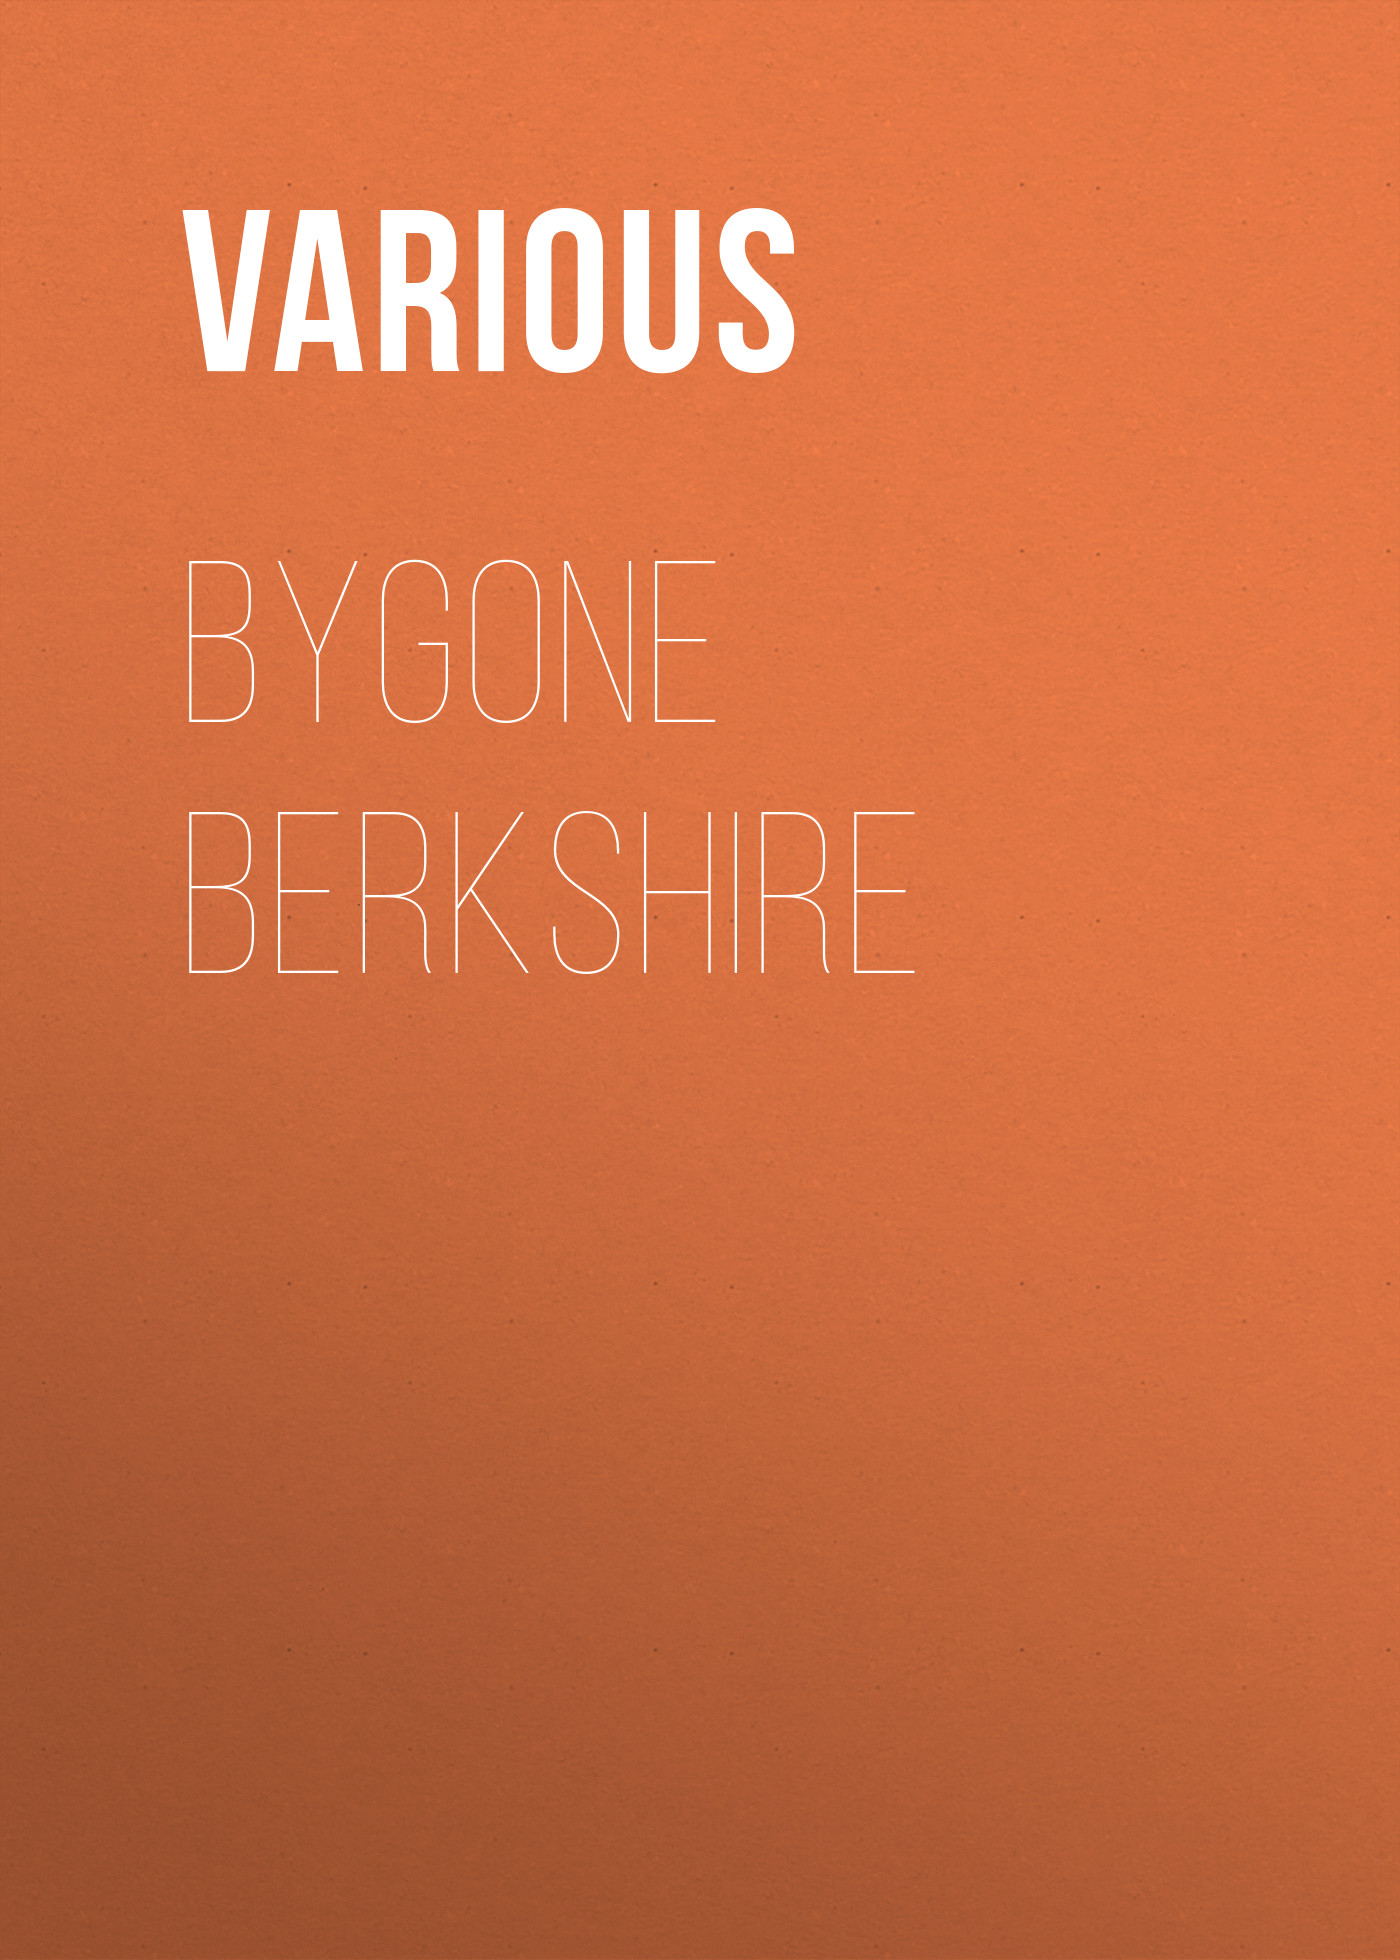 Книга Bygone Berkshire из серии , созданная  Various, может относится к жанру Зарубежная классика. Стоимость электронной книги Bygone Berkshire с идентификатором 25570263 составляет 0 руб.